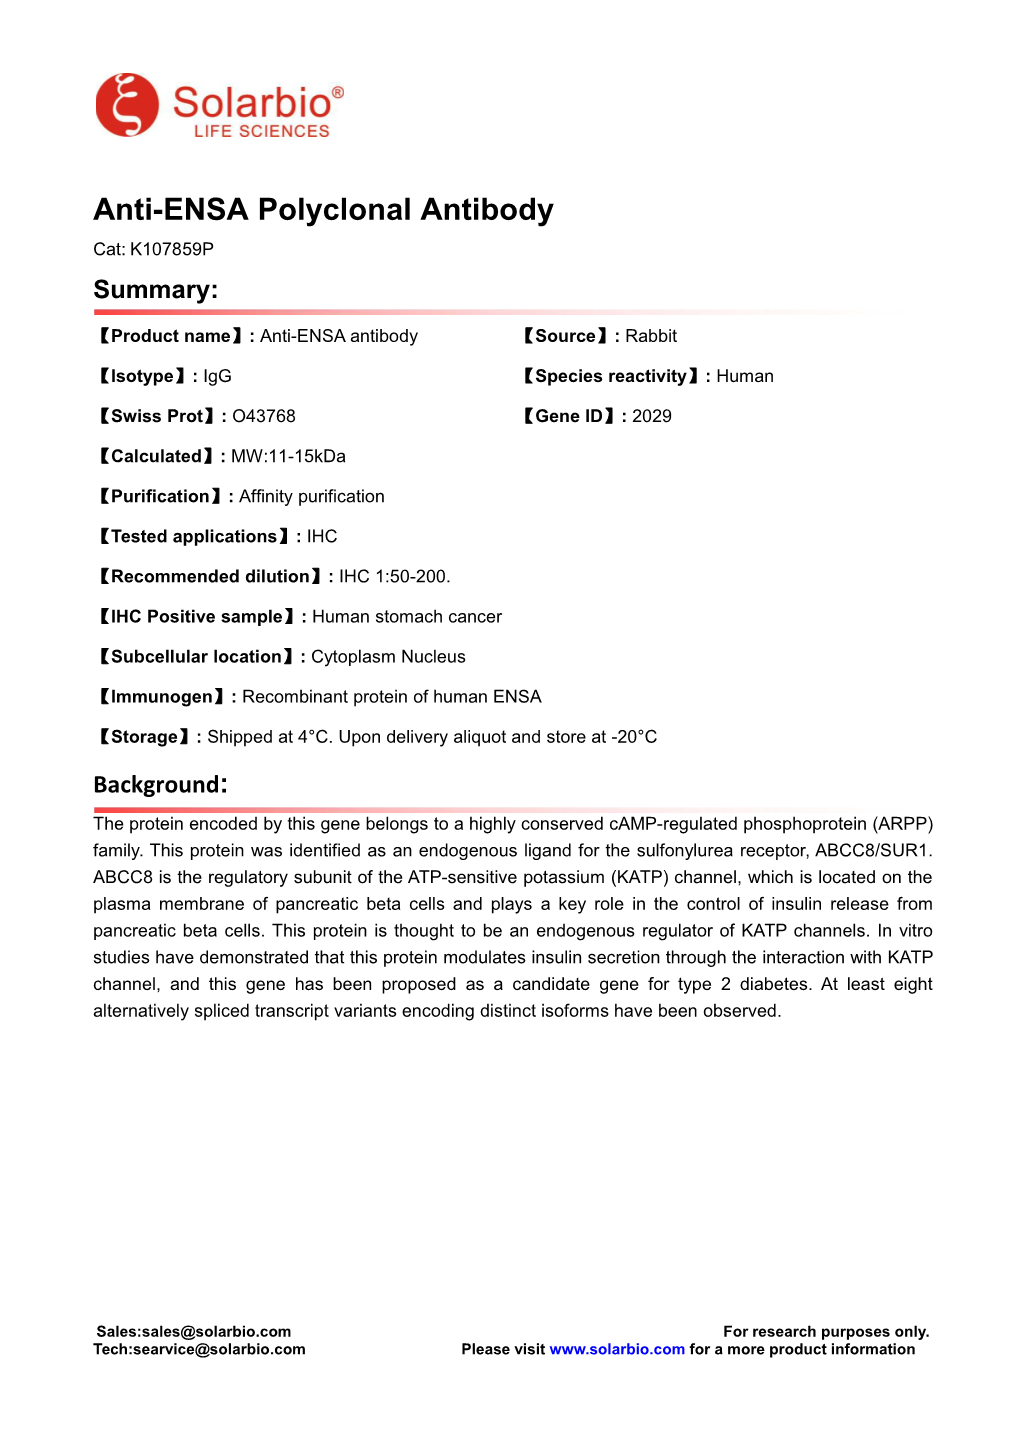 Anti-ENSA Polyclonal Antibody Cat: K107859P Summary